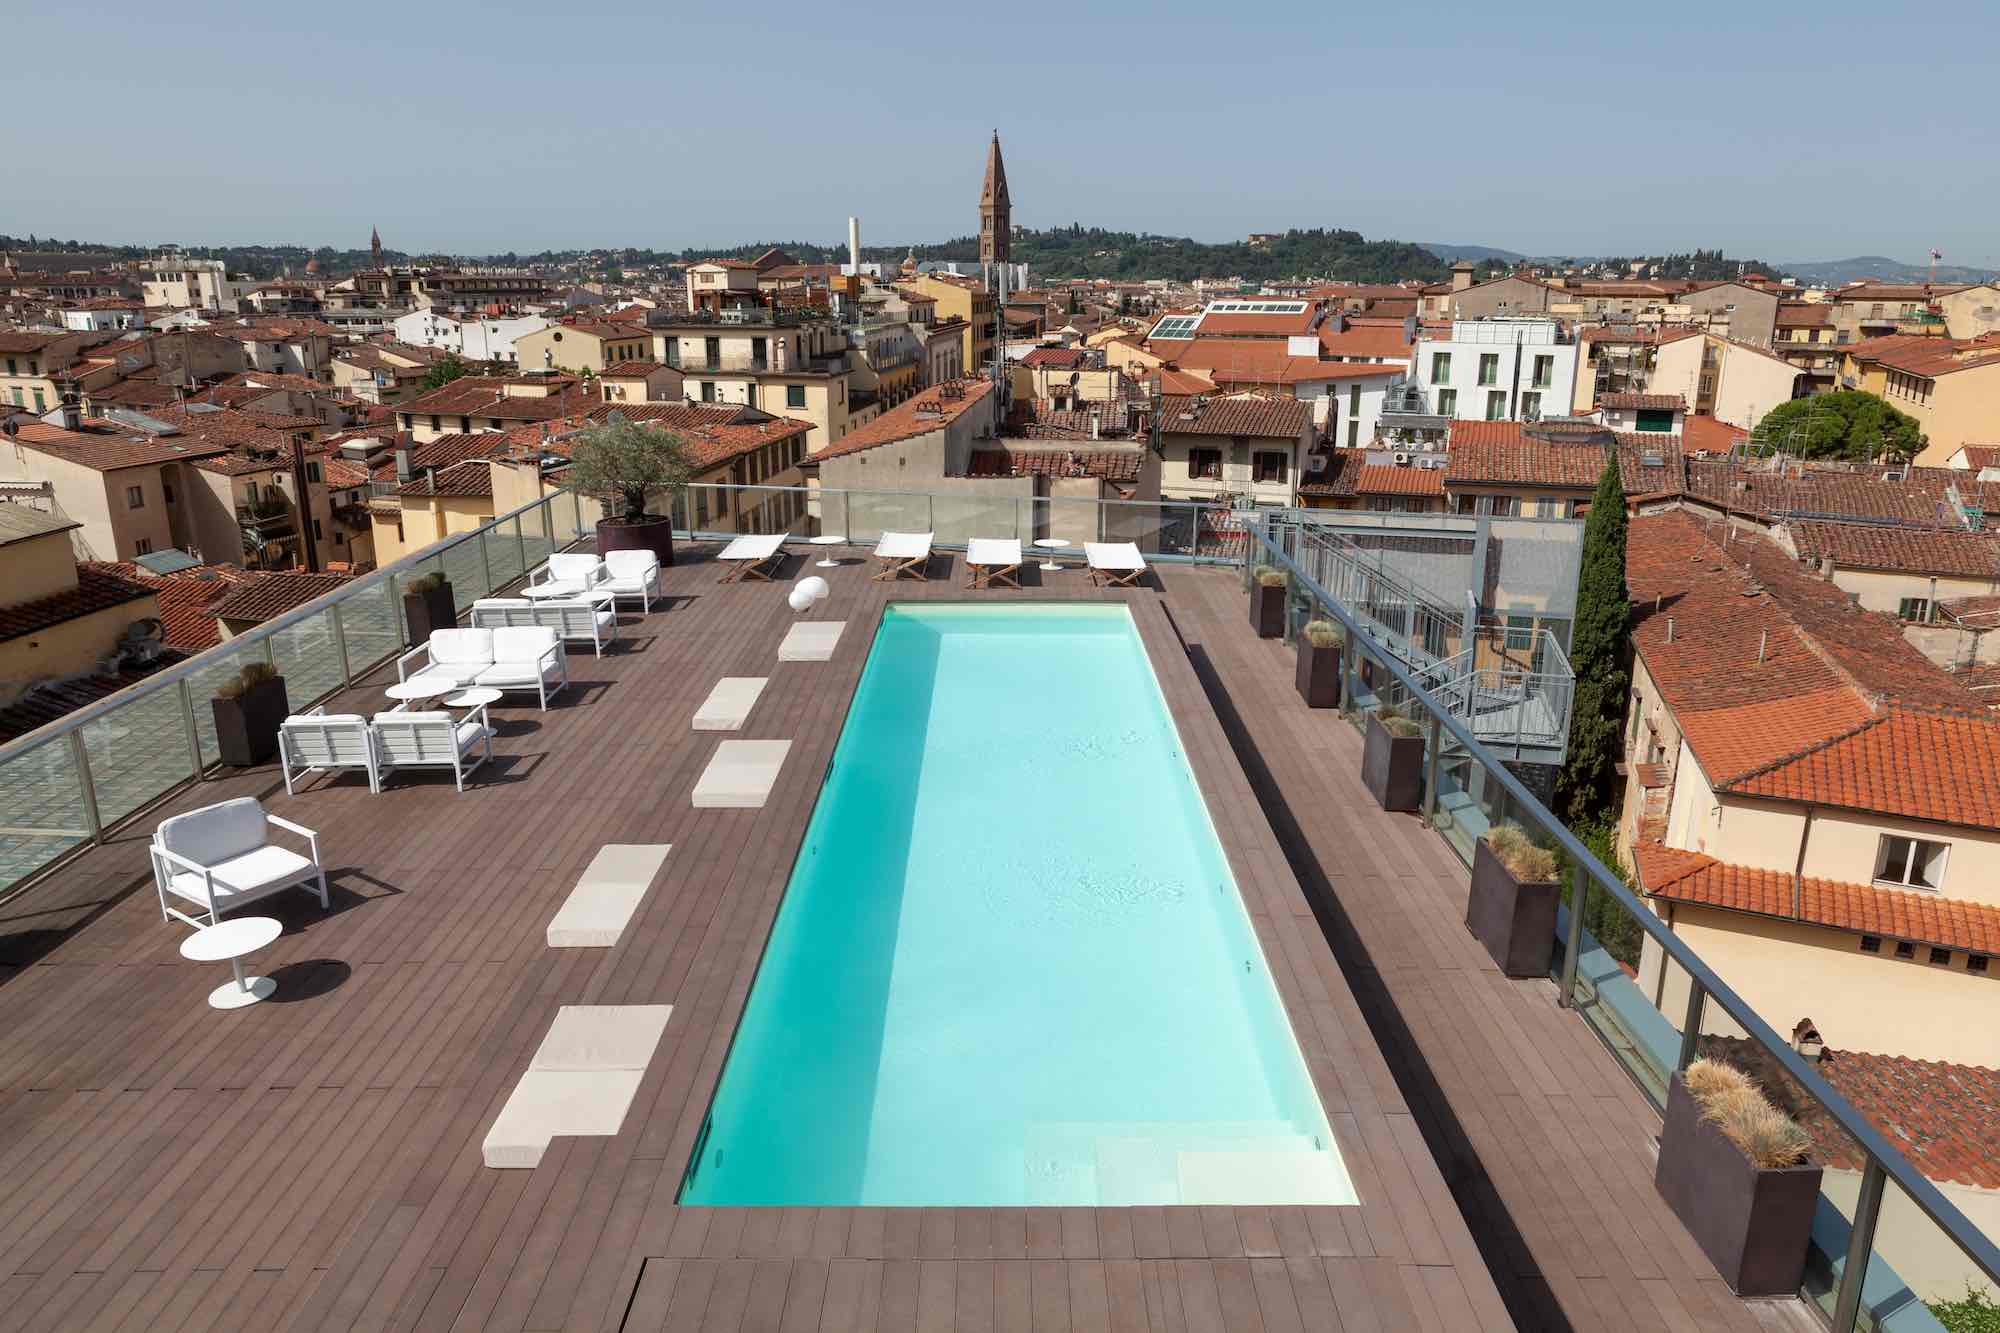 Terrazza panoramica del Glance Hotel in Florence da cui si vede gran parte di Firenze